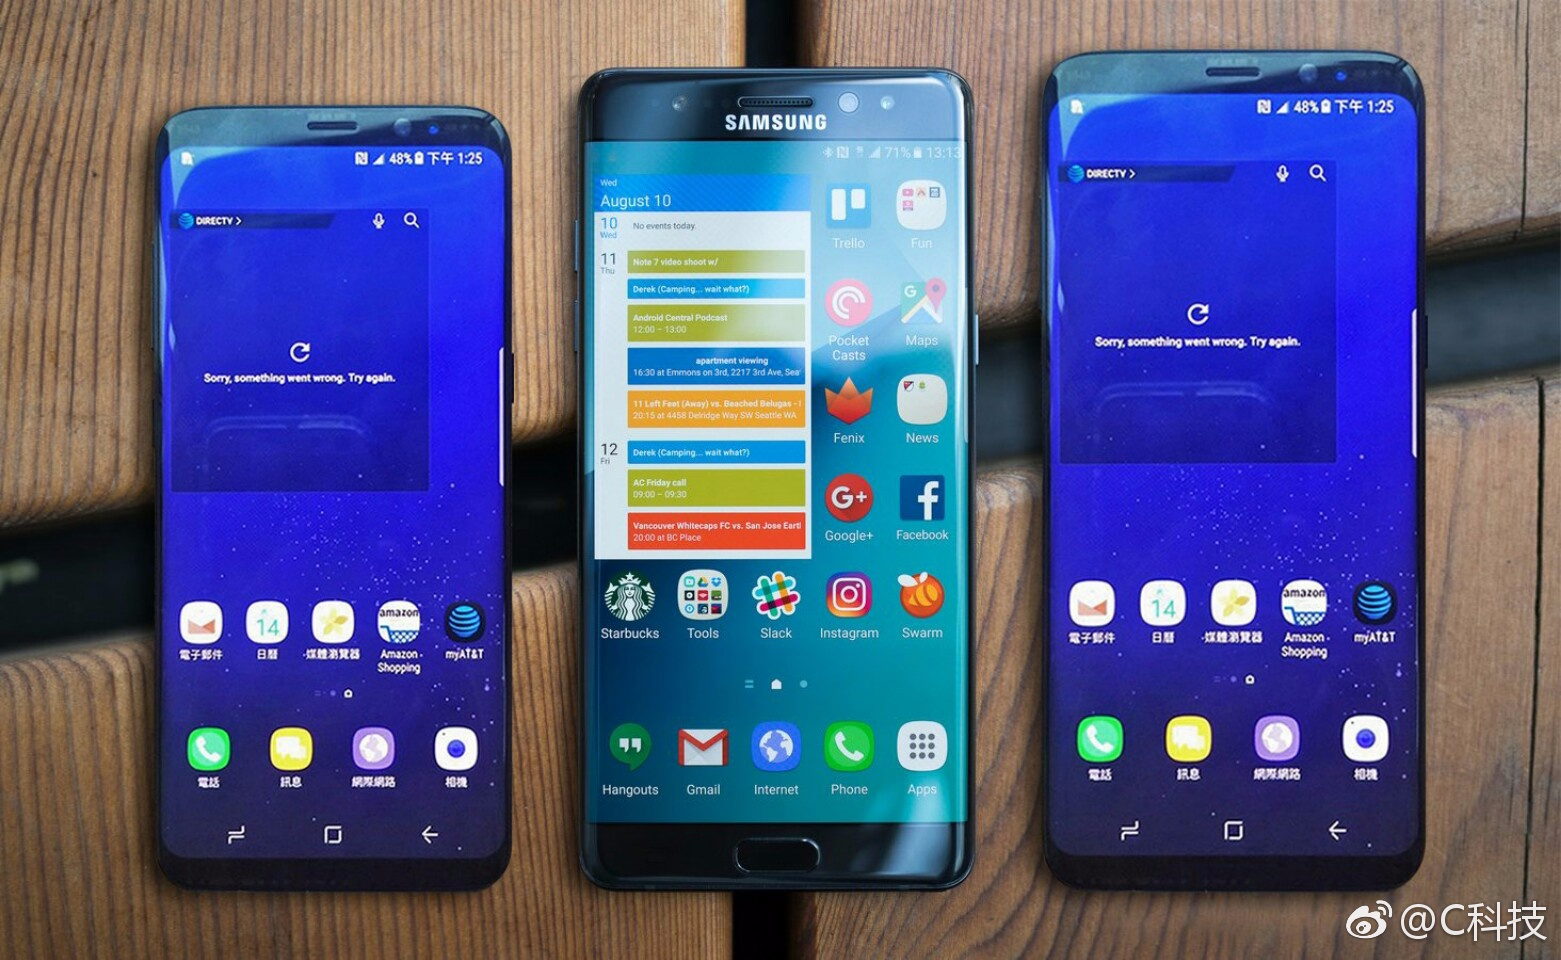 Comparación de tamaño de Galaxy S8 y S8 Plus con S7 edge y Note 7